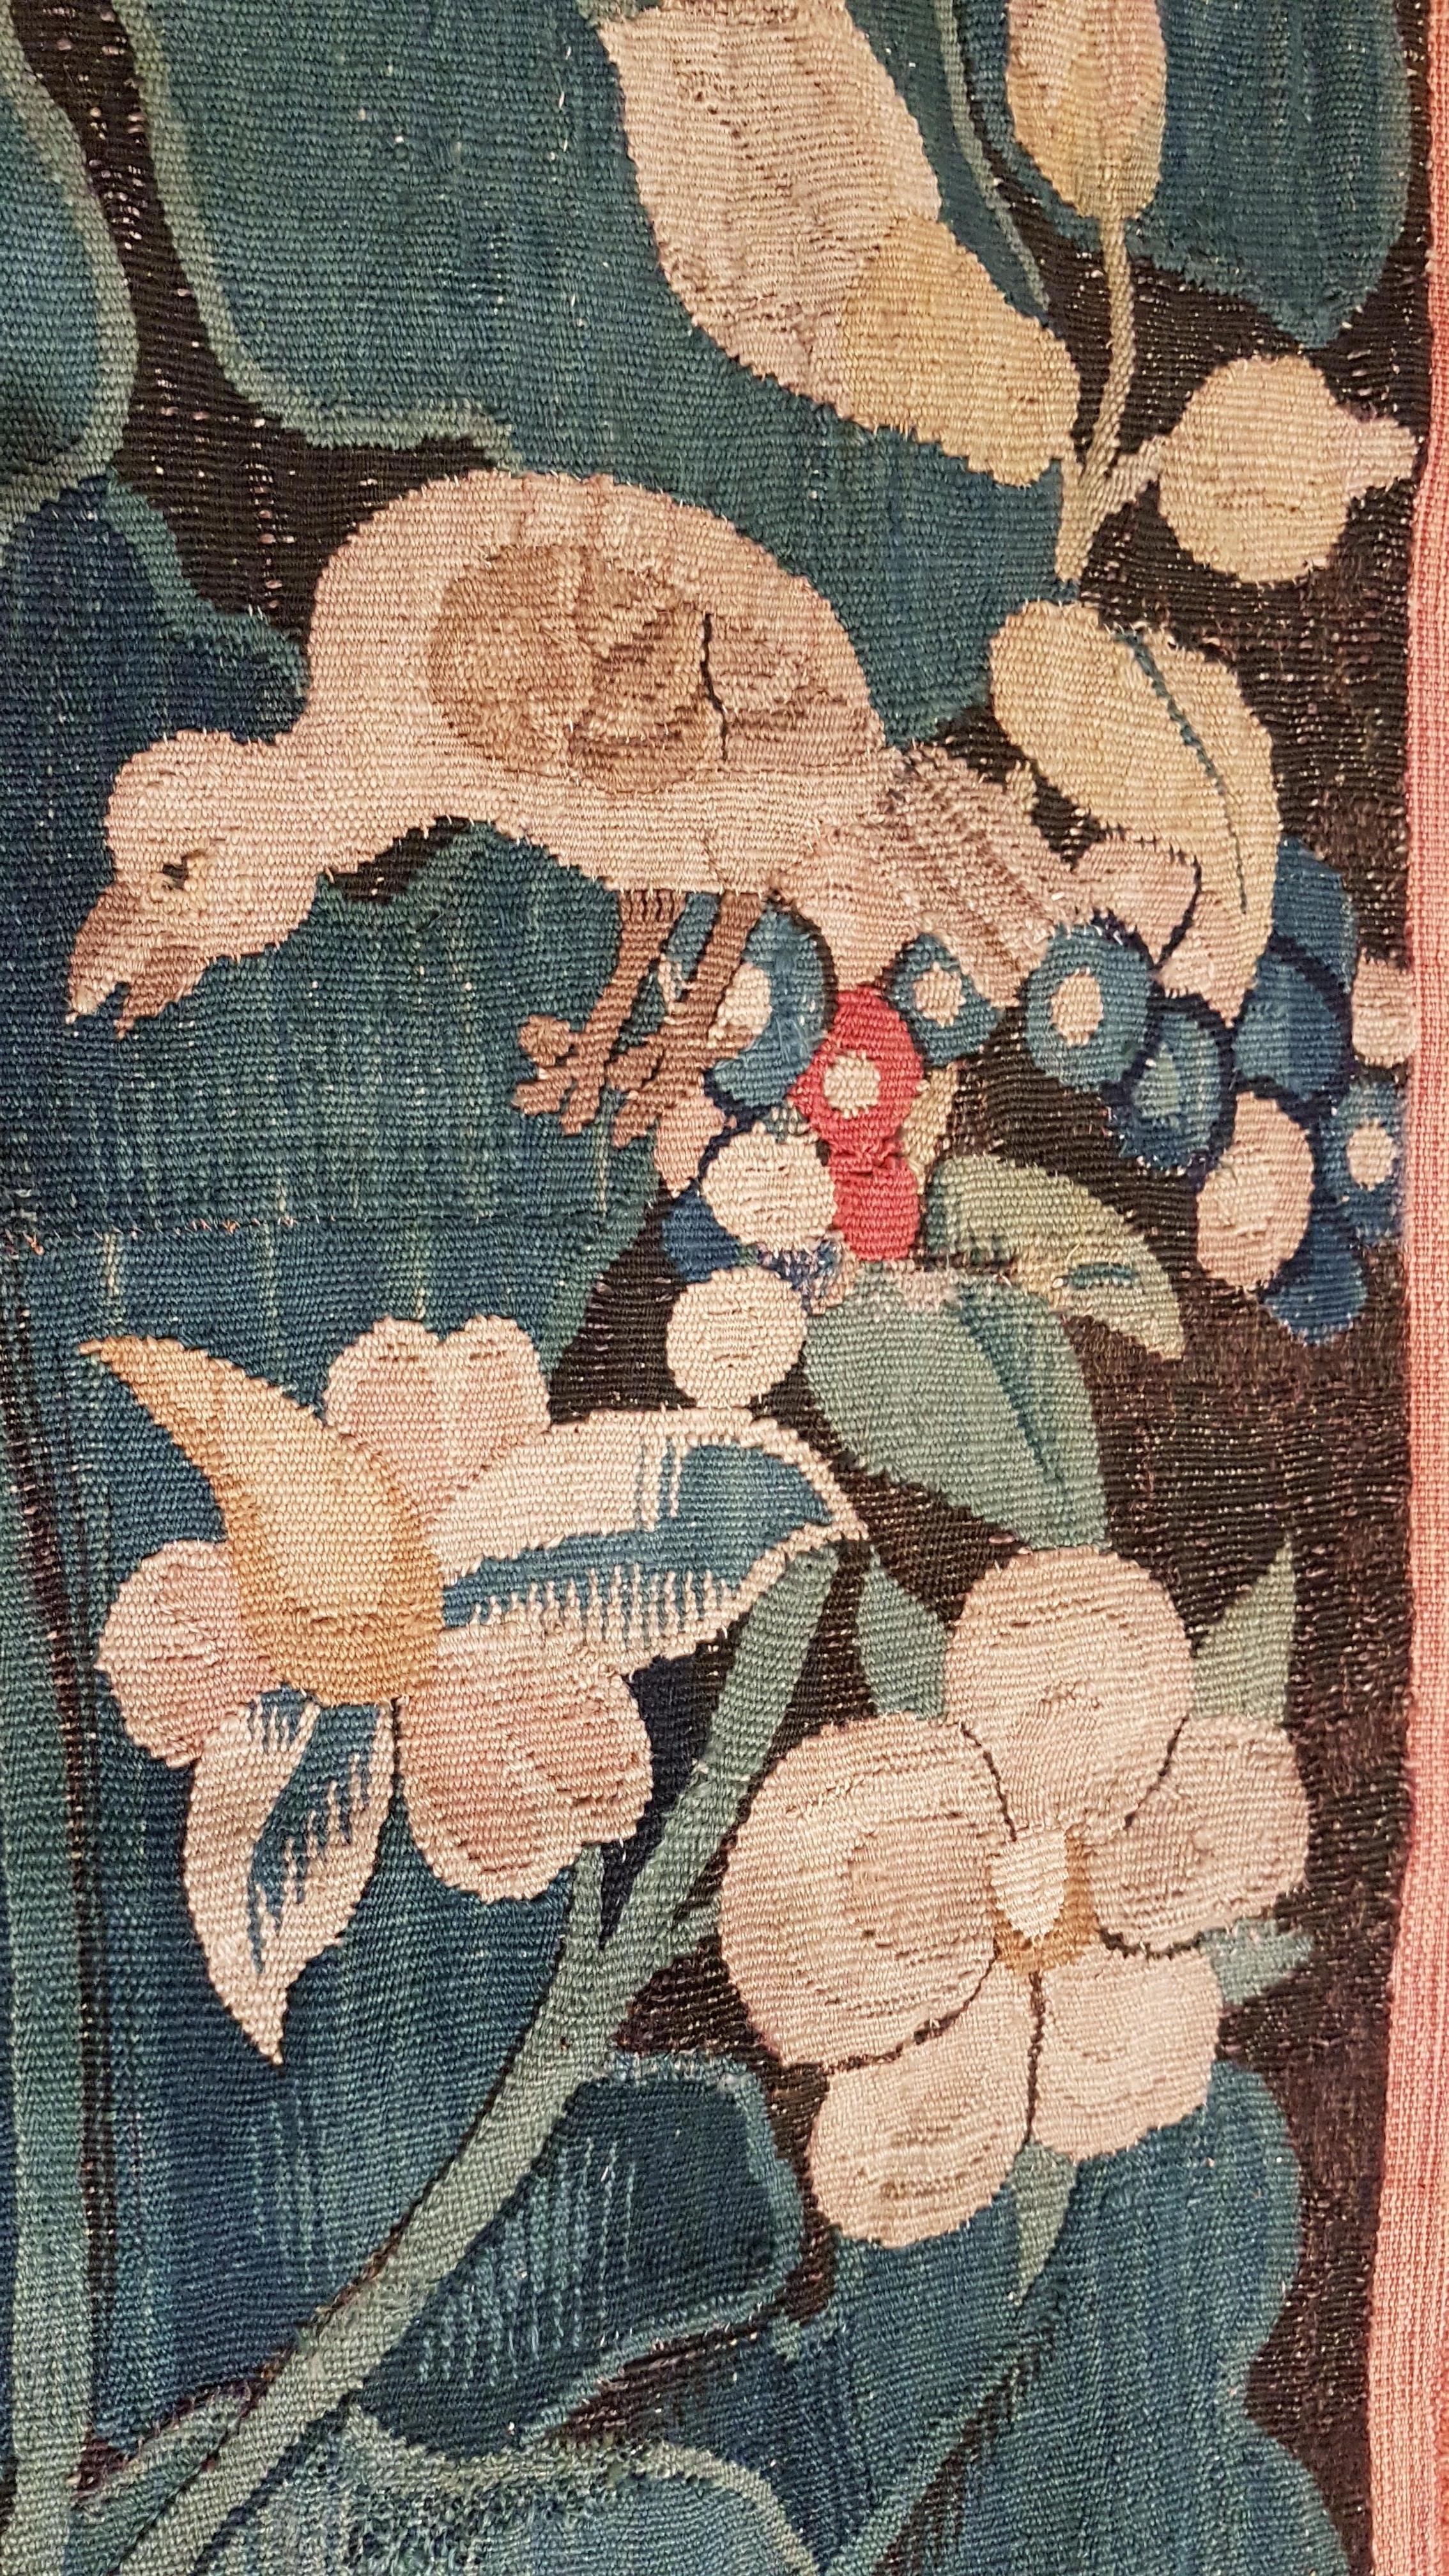 antique 16th century feuilles de choux tapestry